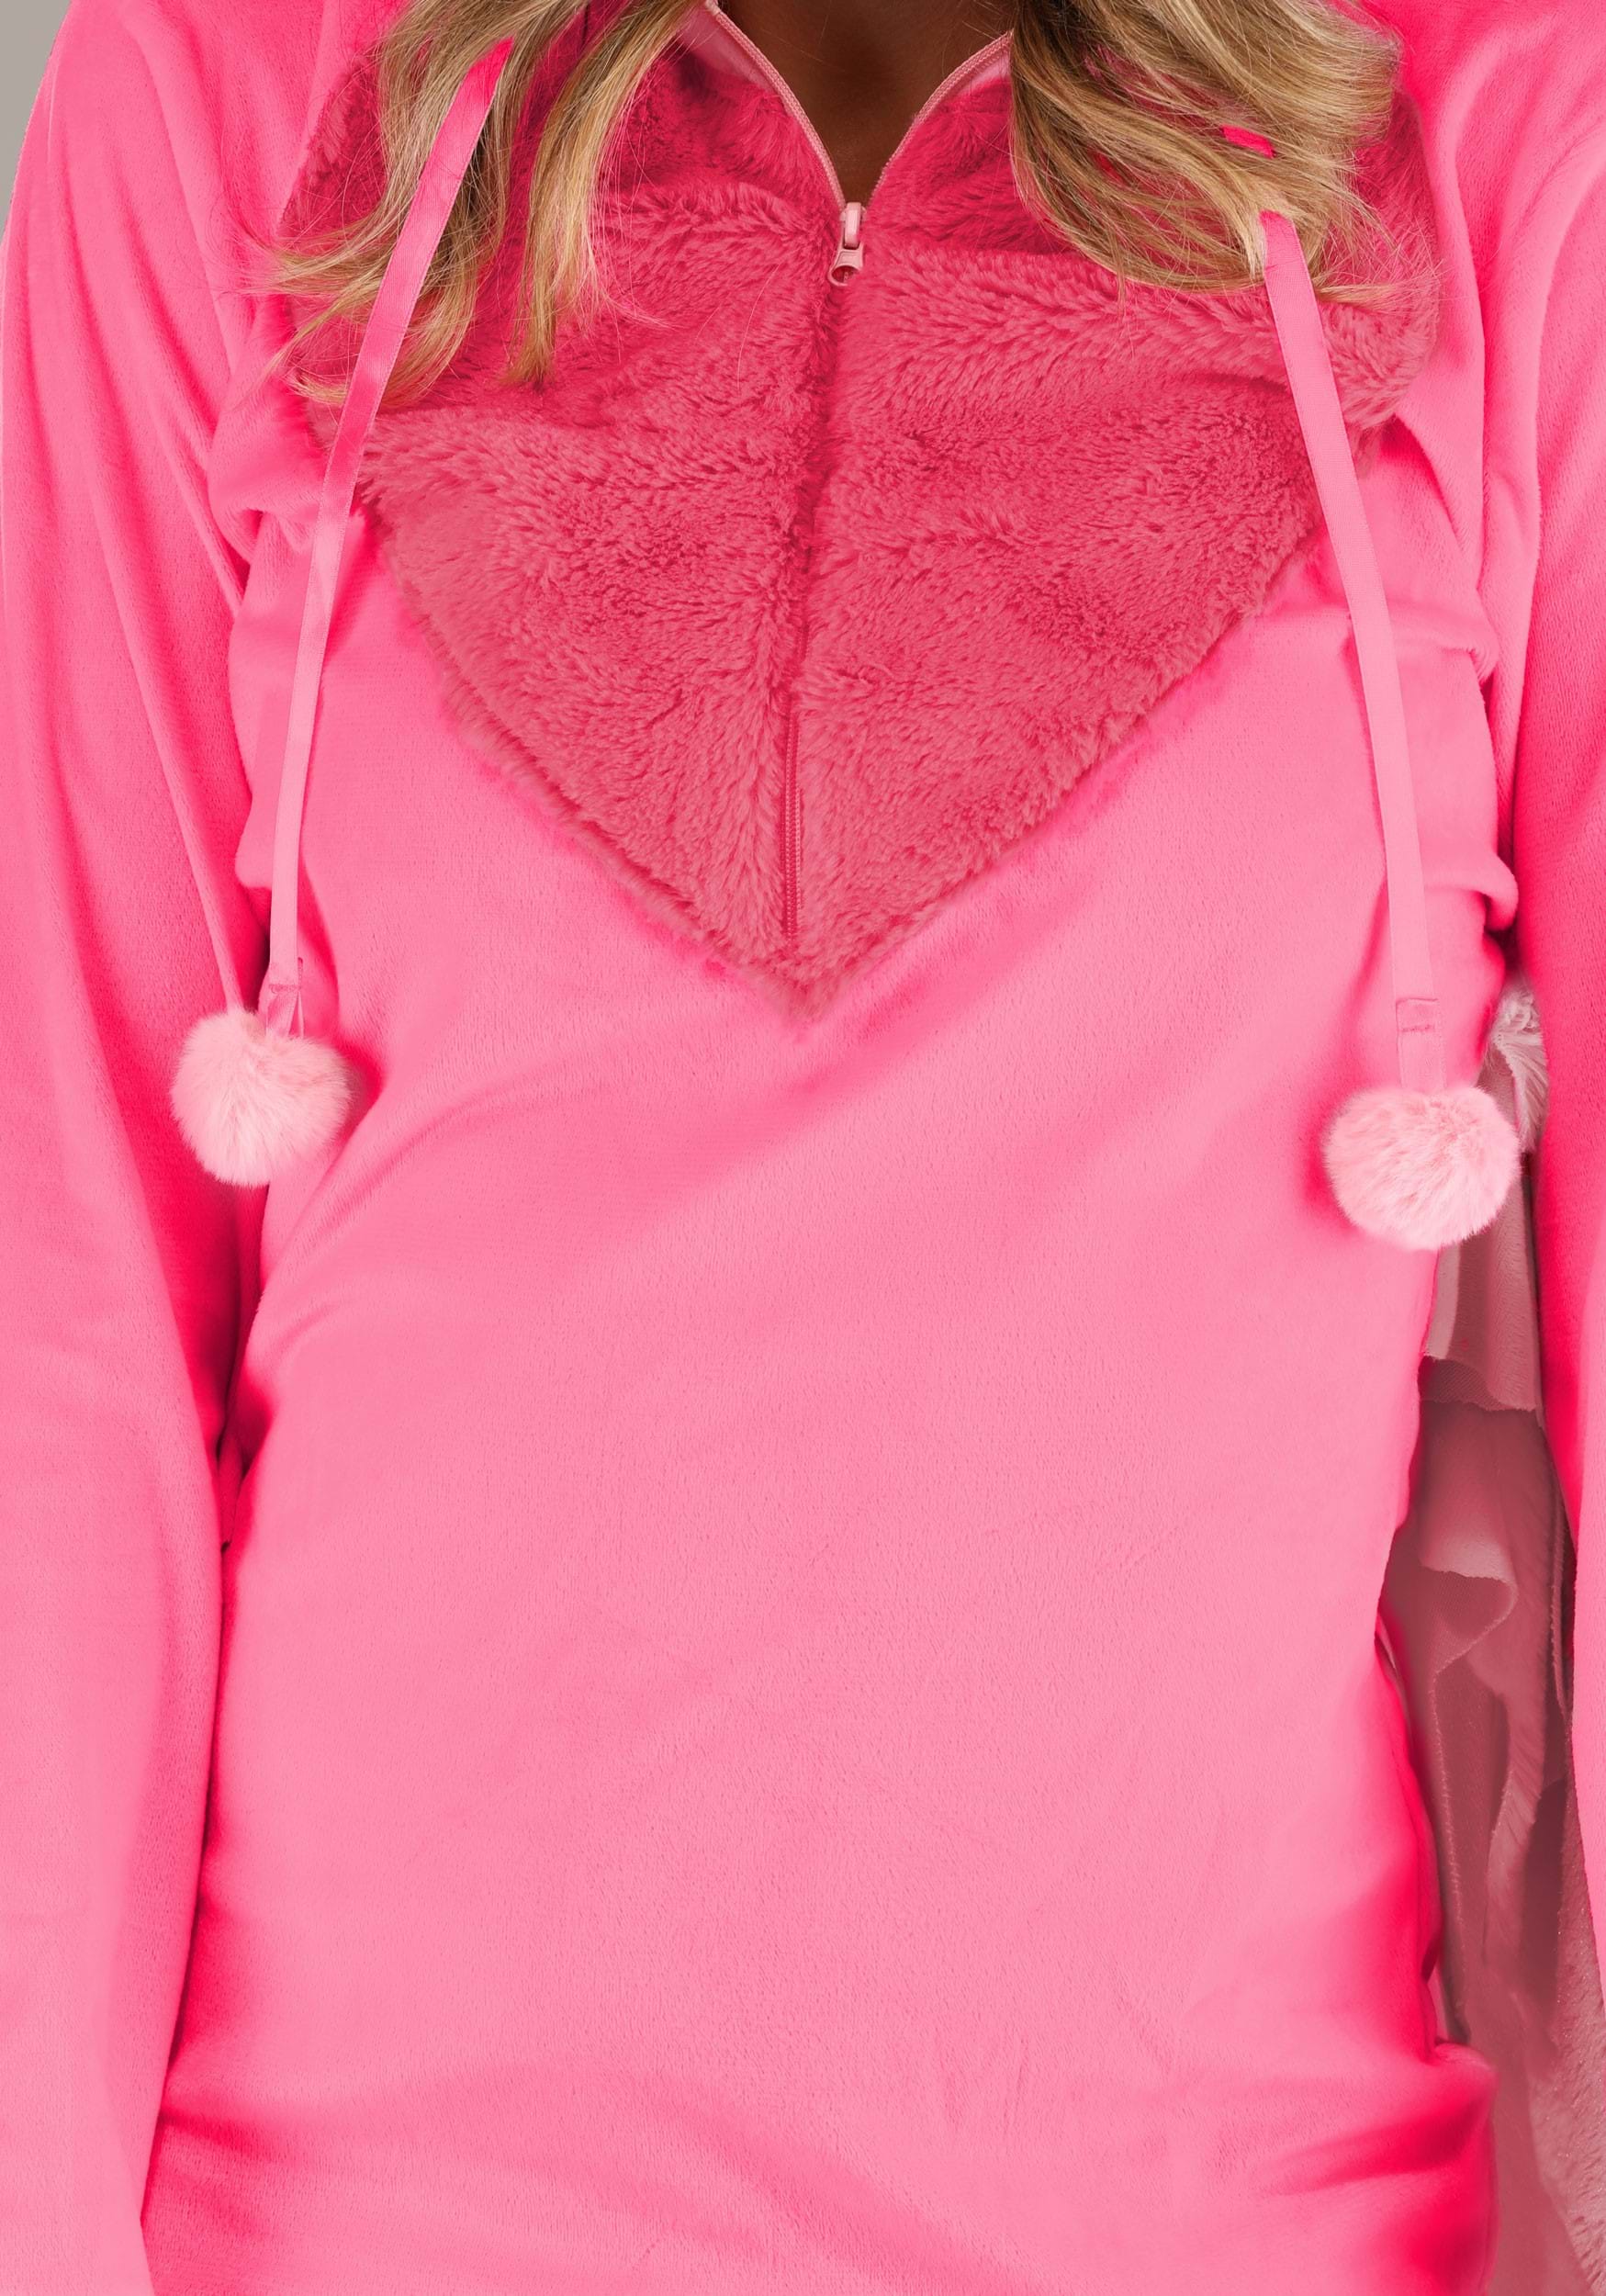 Women's Fancy Flamingo Costume Dress